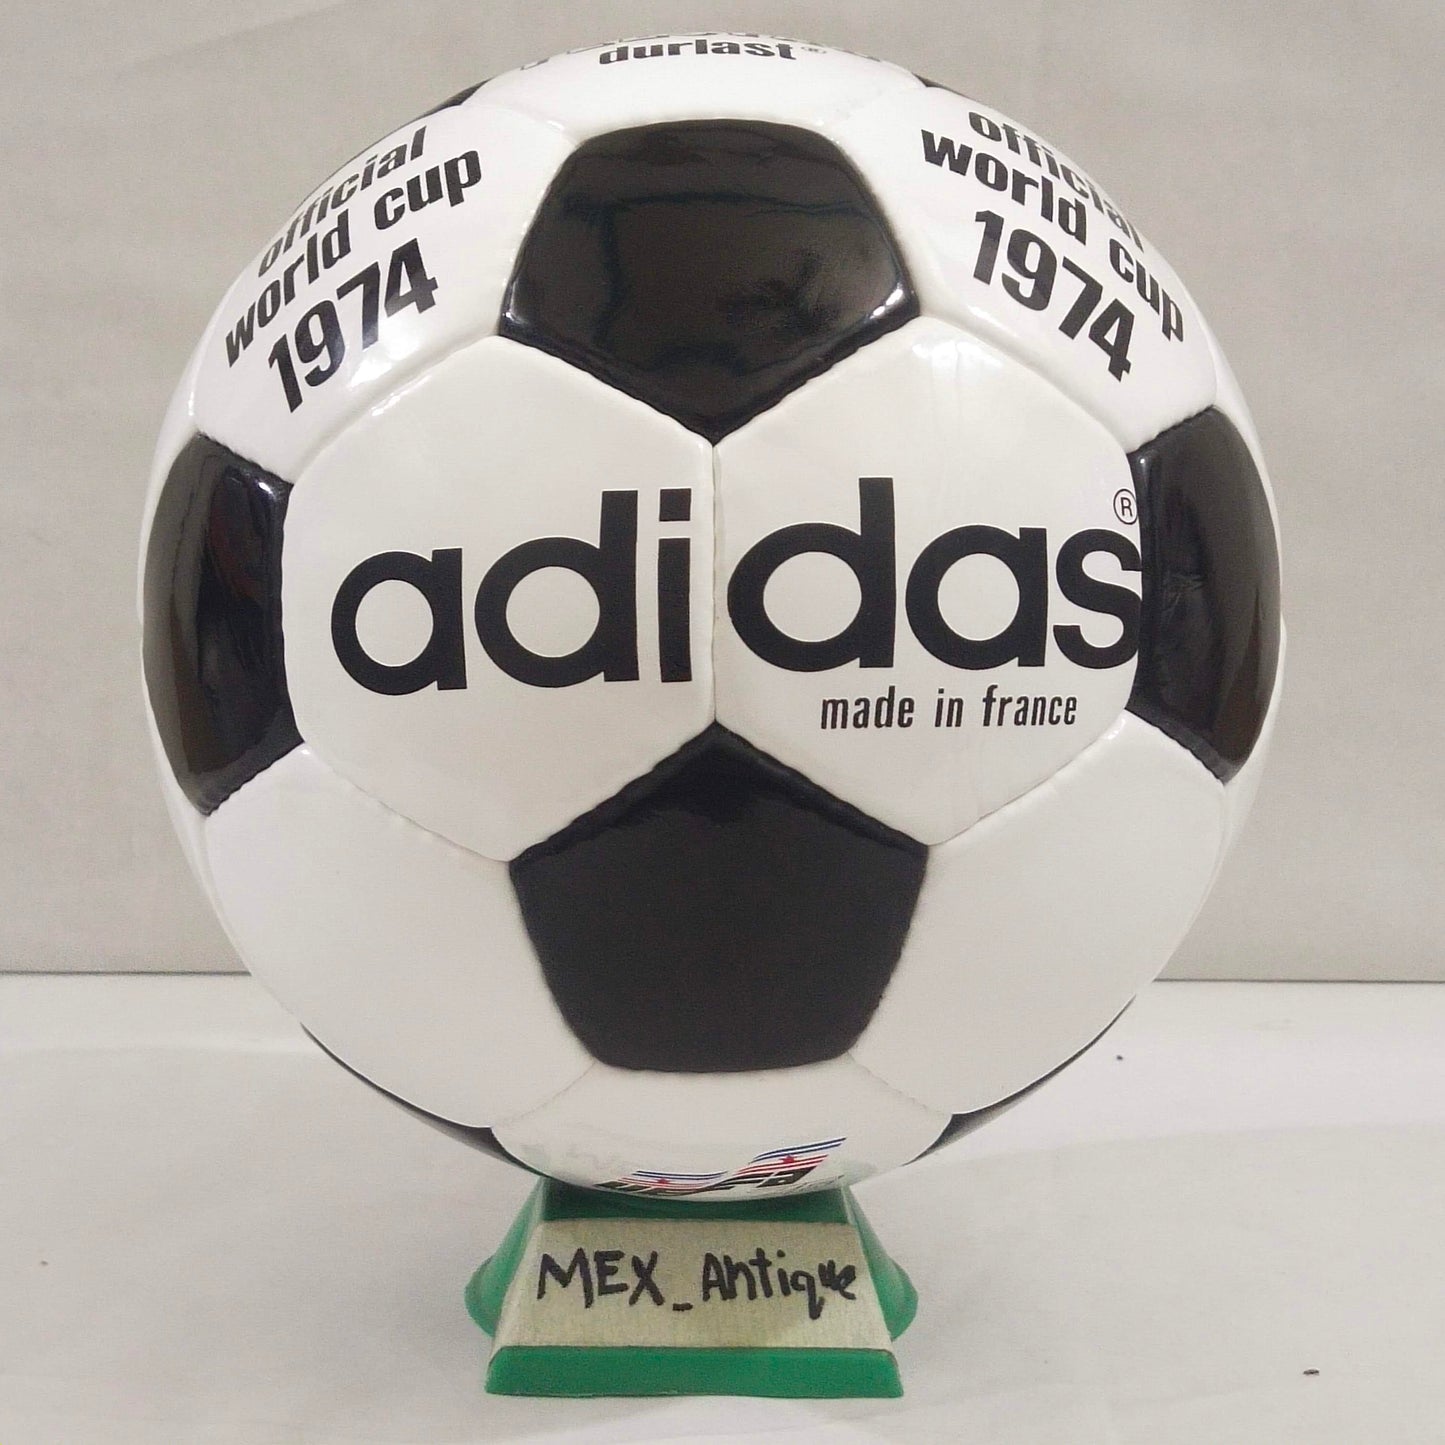 Adidas Telstar Durlast | 1976 | UEFA Europa League | Official Match Ball | Size 5 03